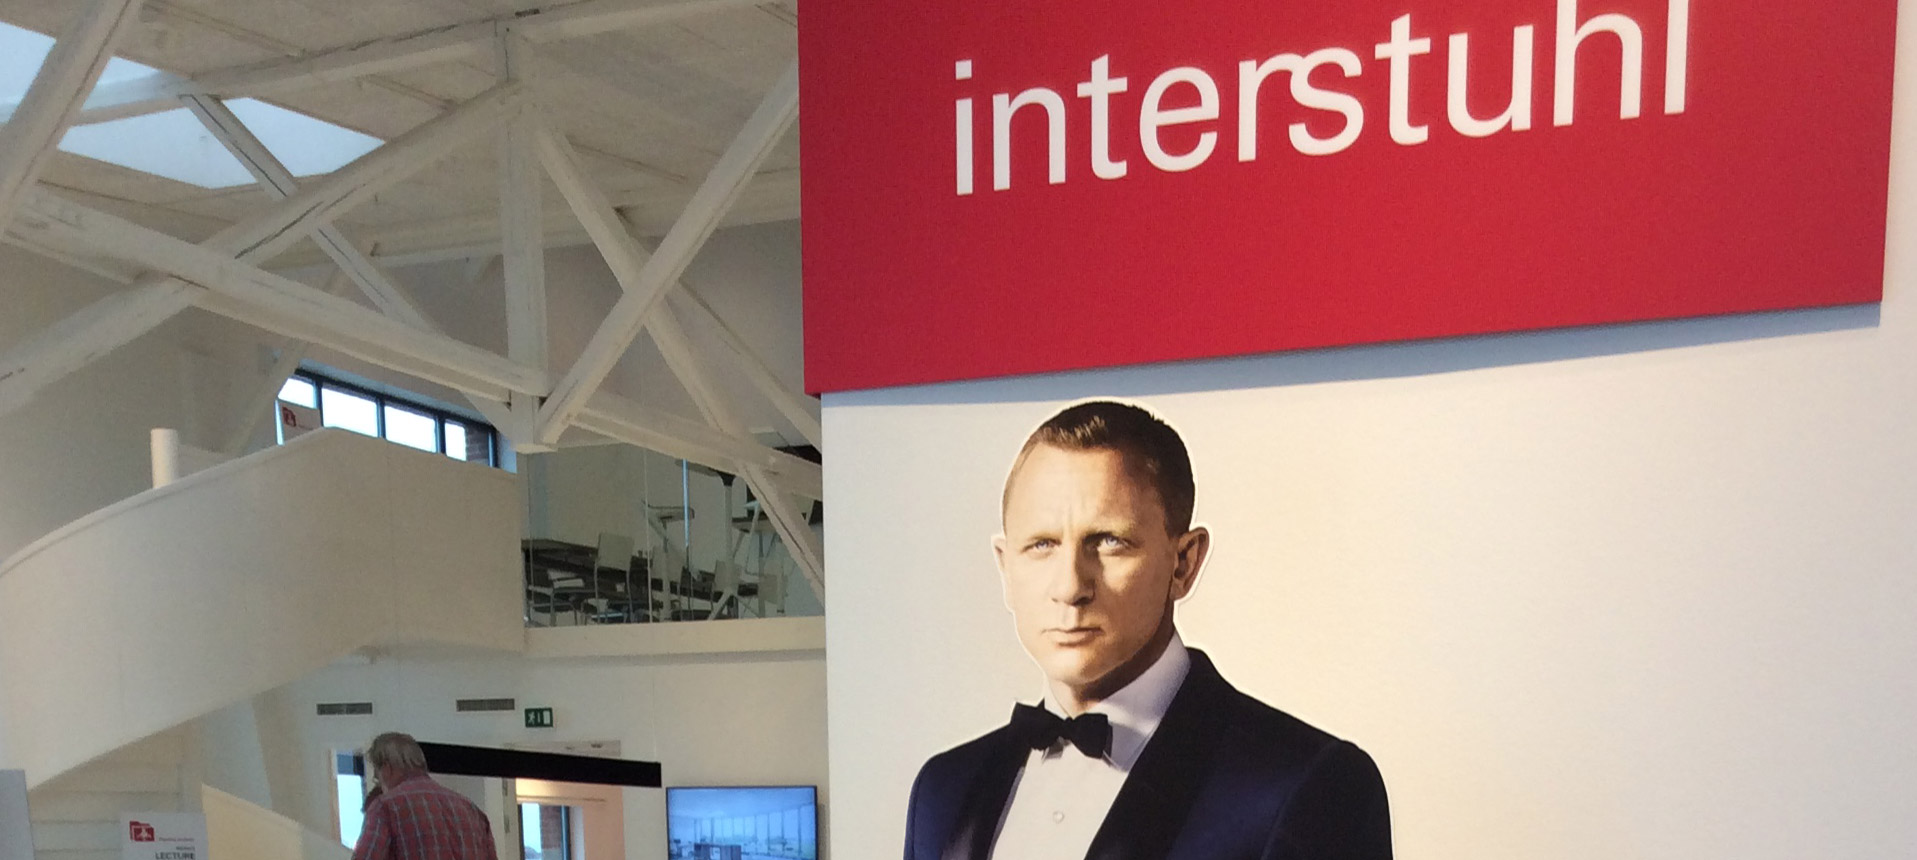 James Bond Event in Copenhagen